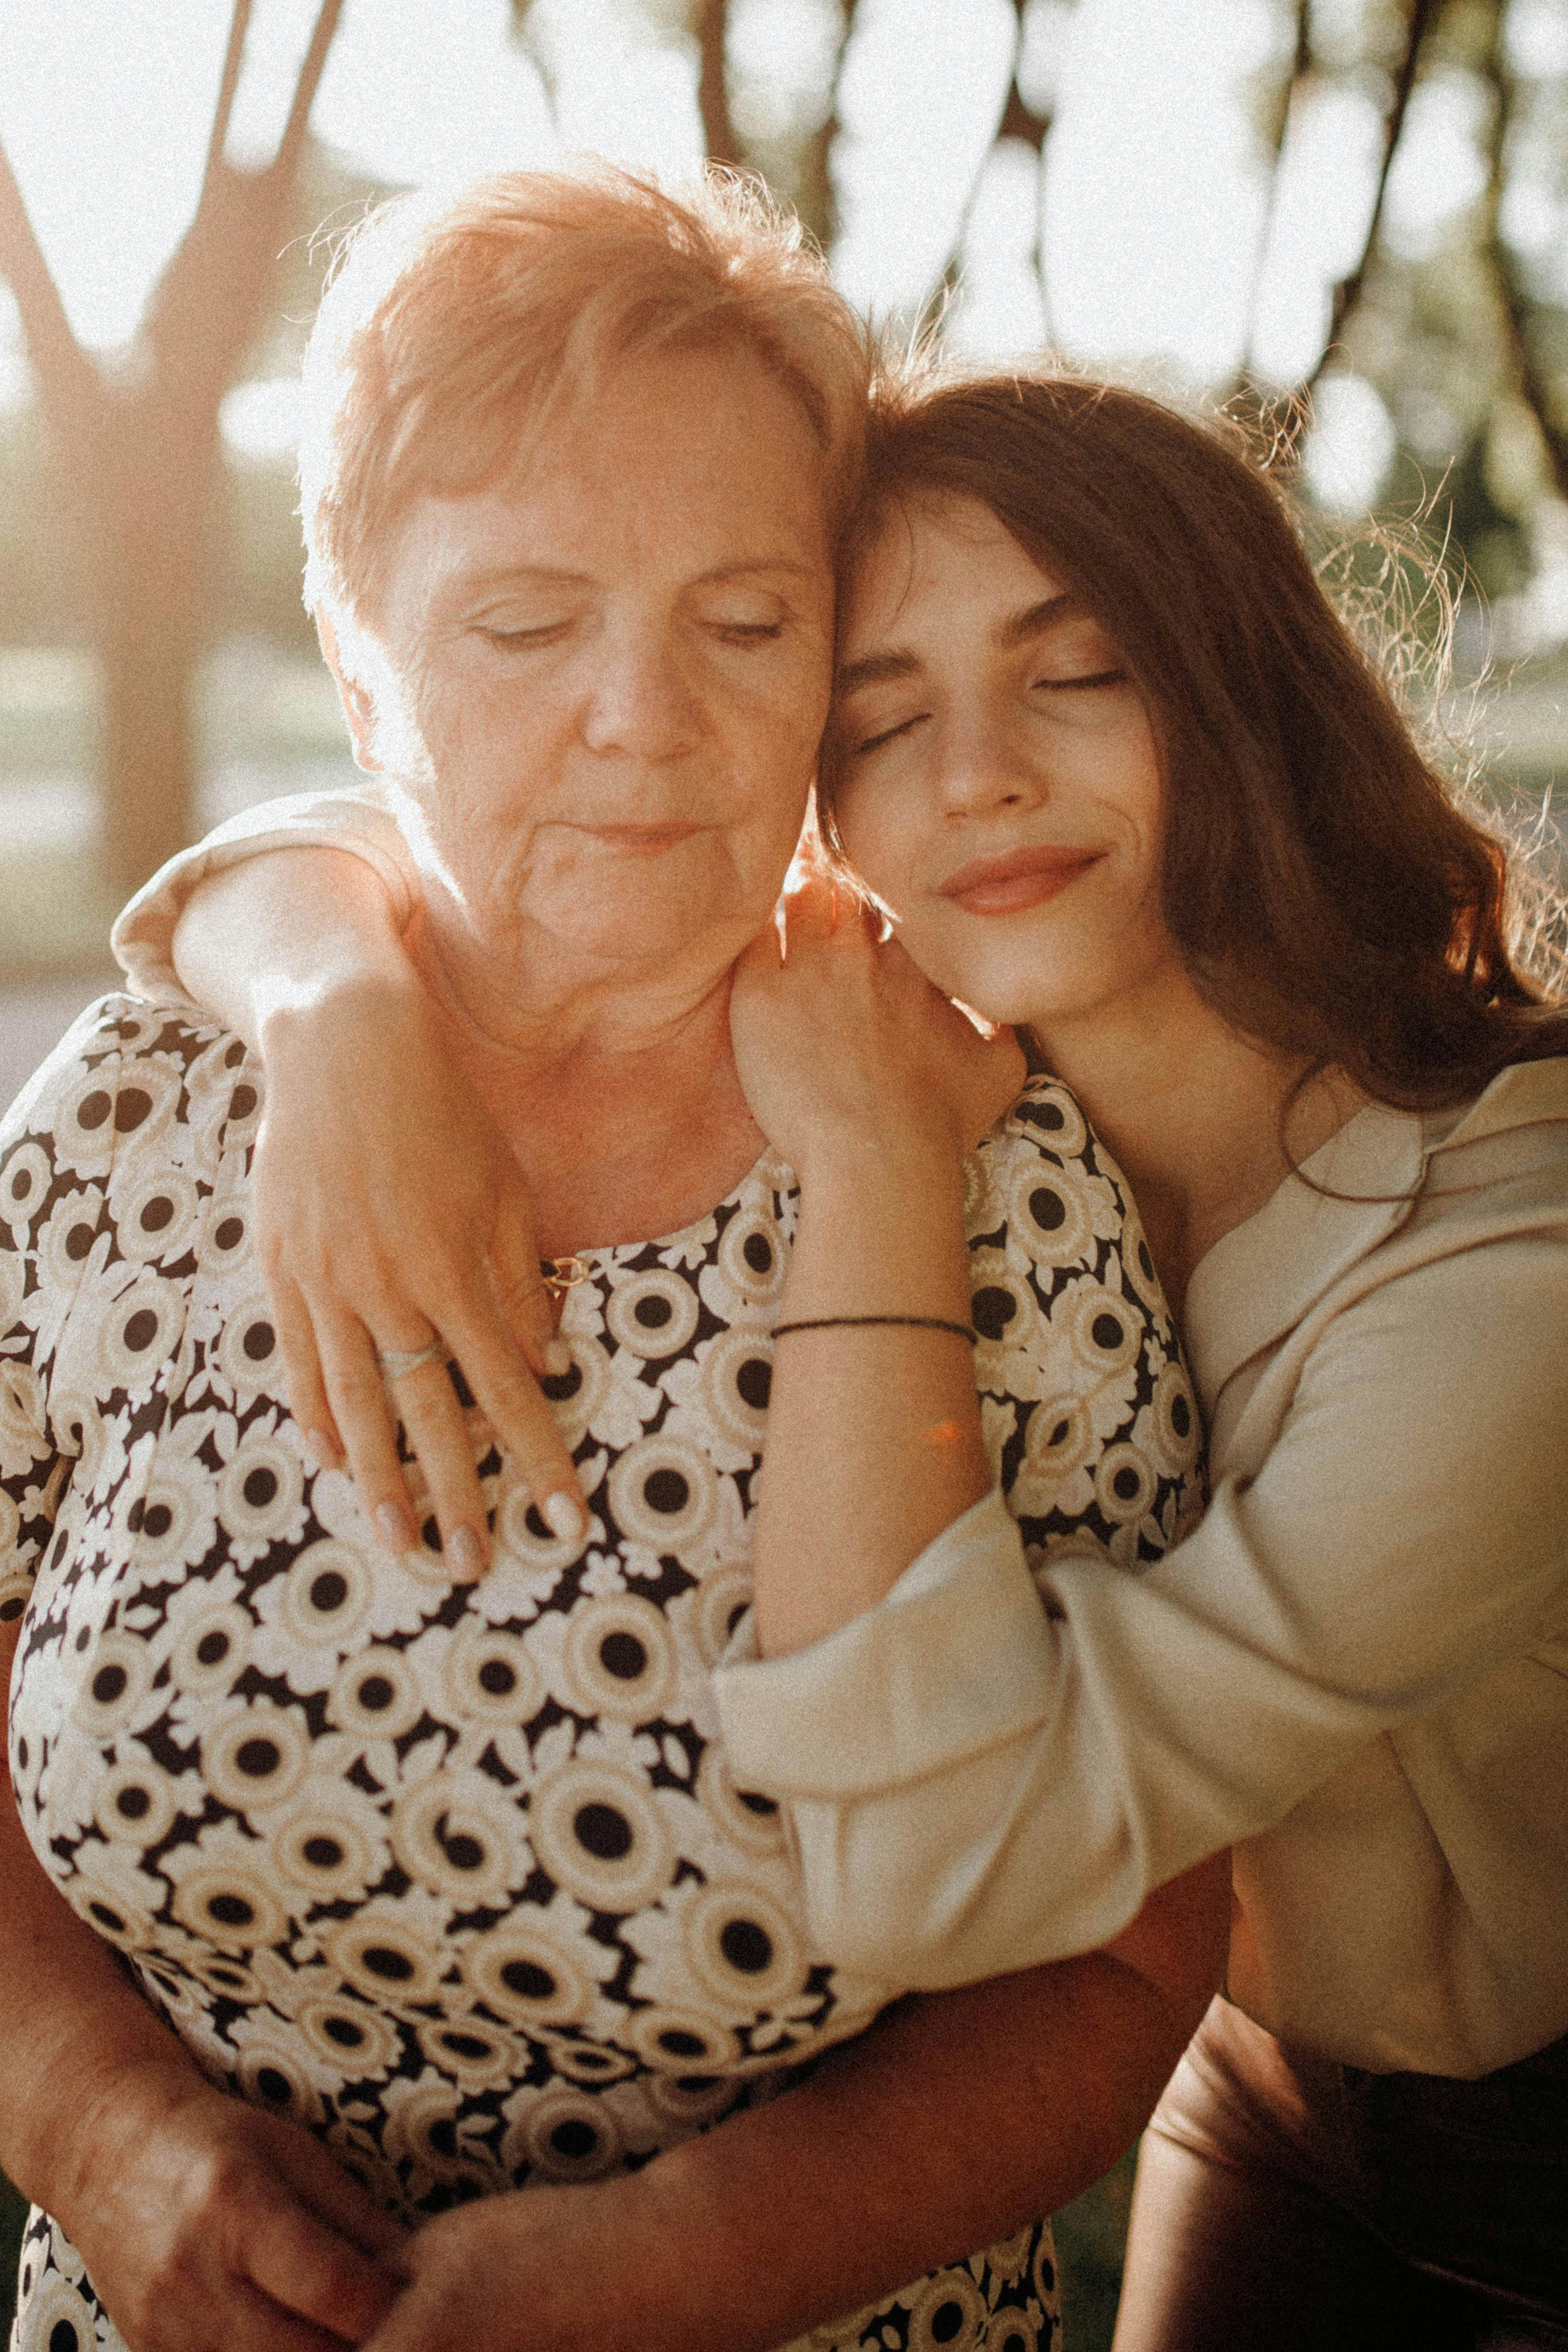 Una mujer joven abrazando a una mujer mayor | Fuente: Pexels